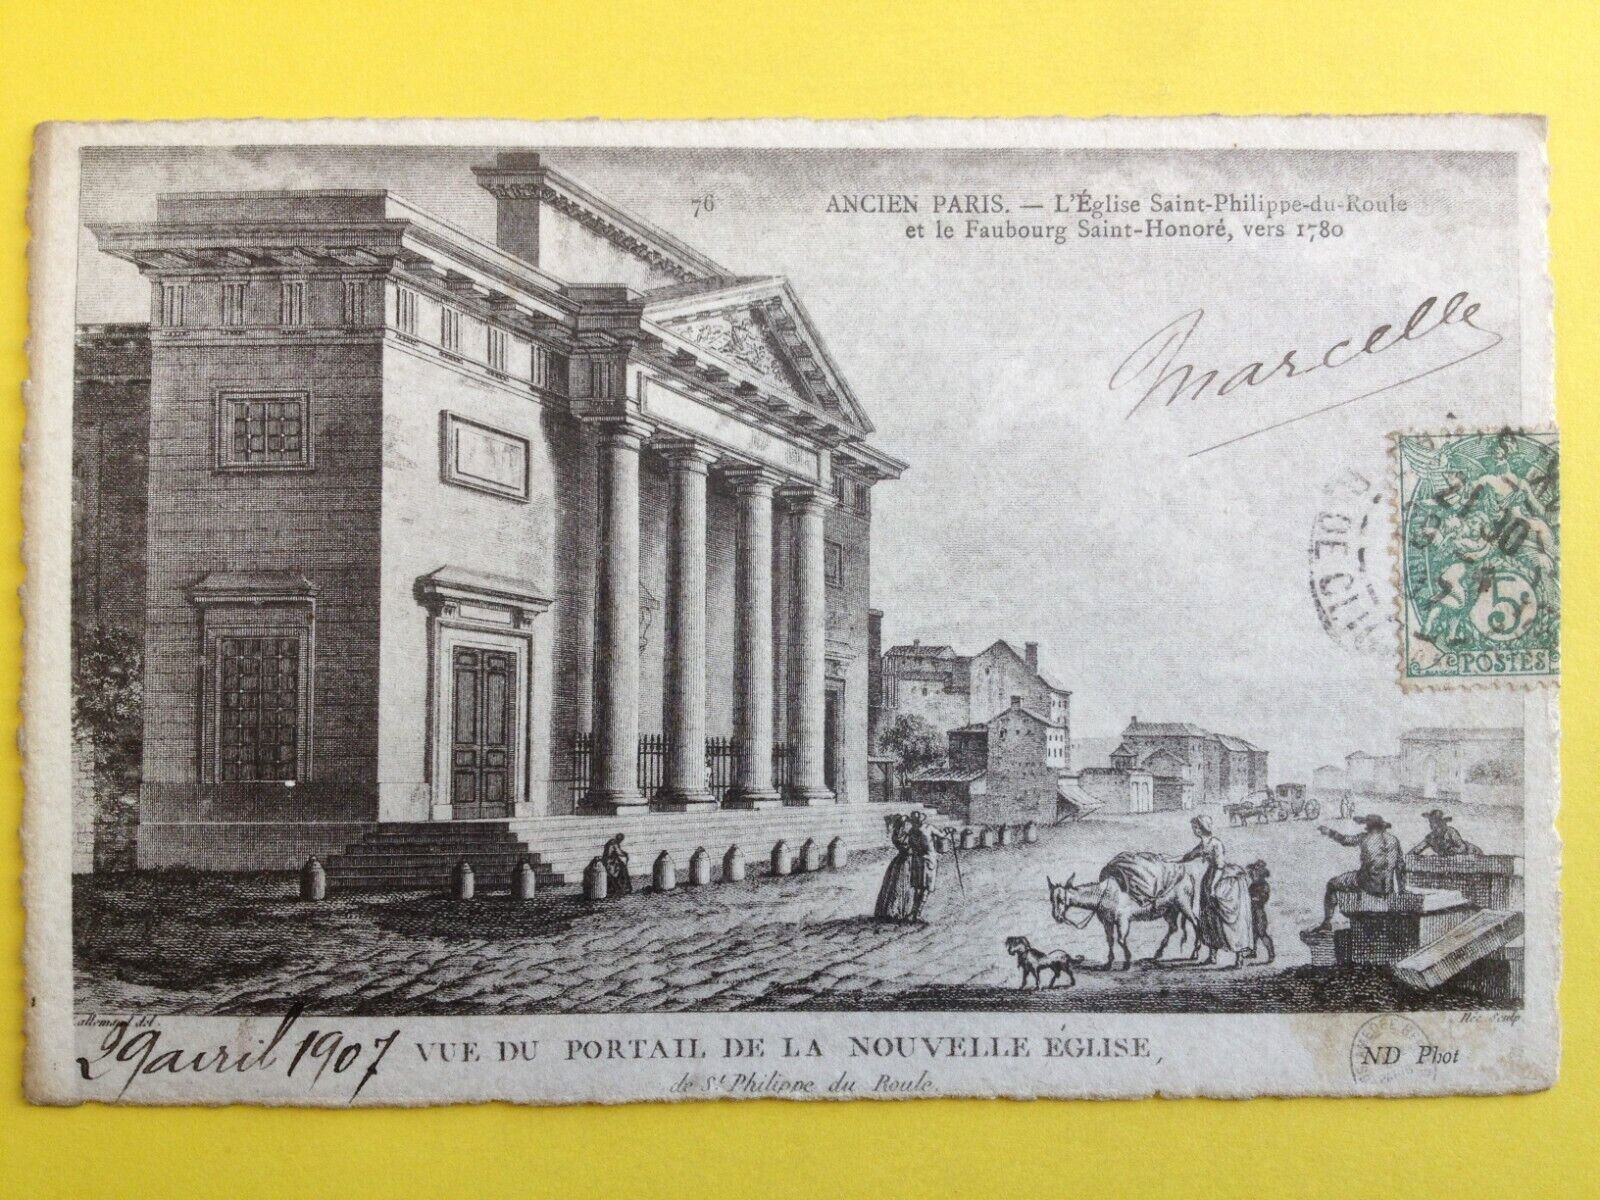 cpa engraving paper vergé OLD PARIS FAUBOURG SAINT HONORED circa 1780 church